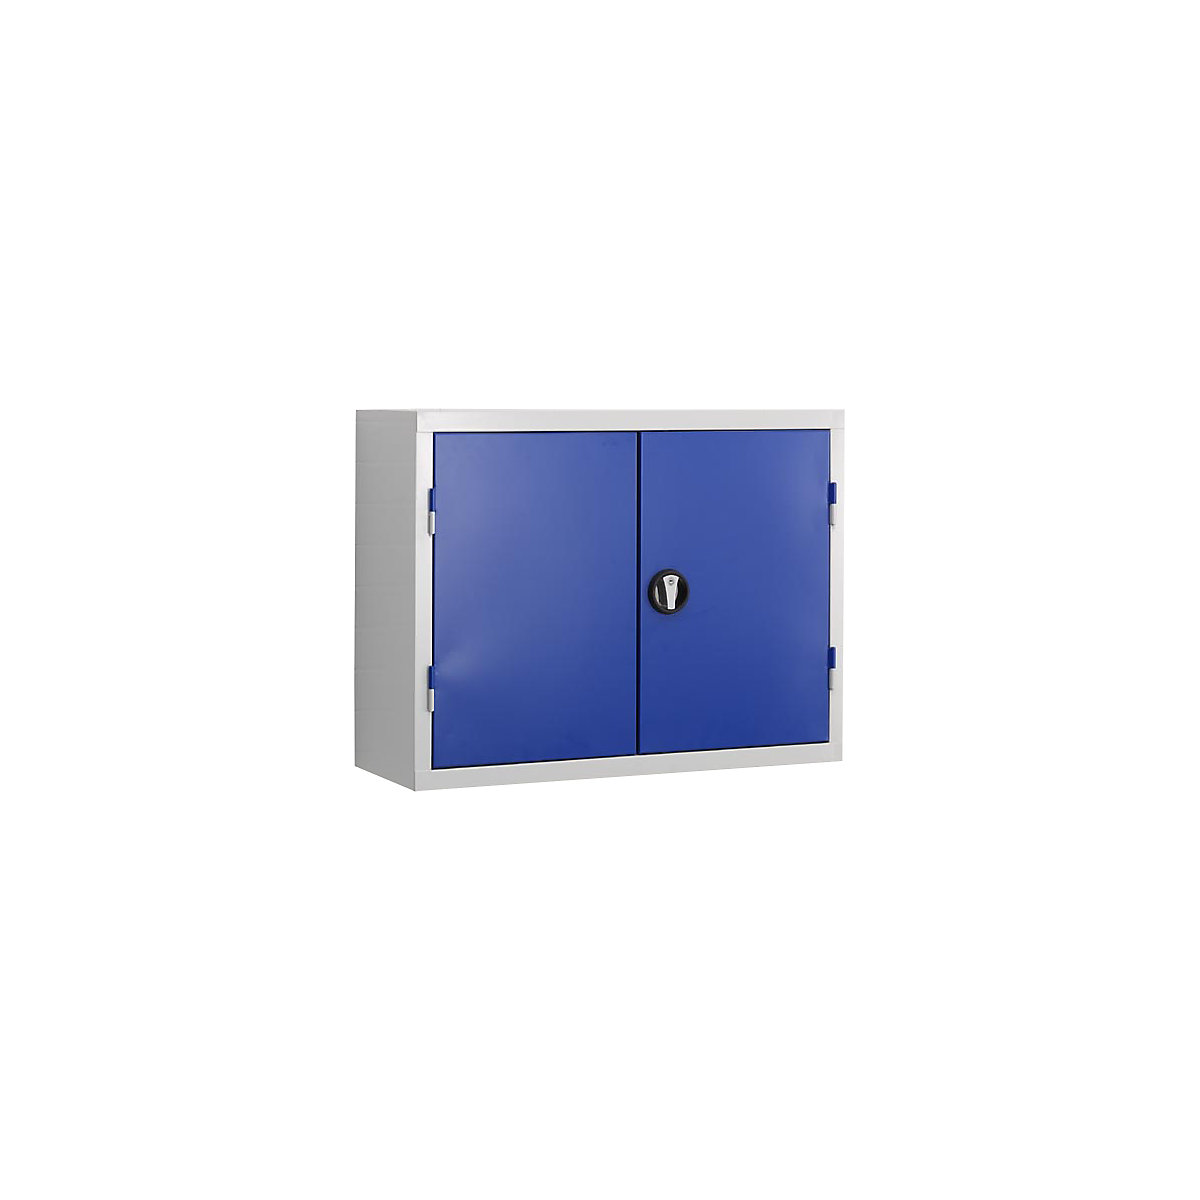 Gereedschapshangkast, deurbinnenzijde van perforatieplaat, gentiaanblauw RAL 5010-5